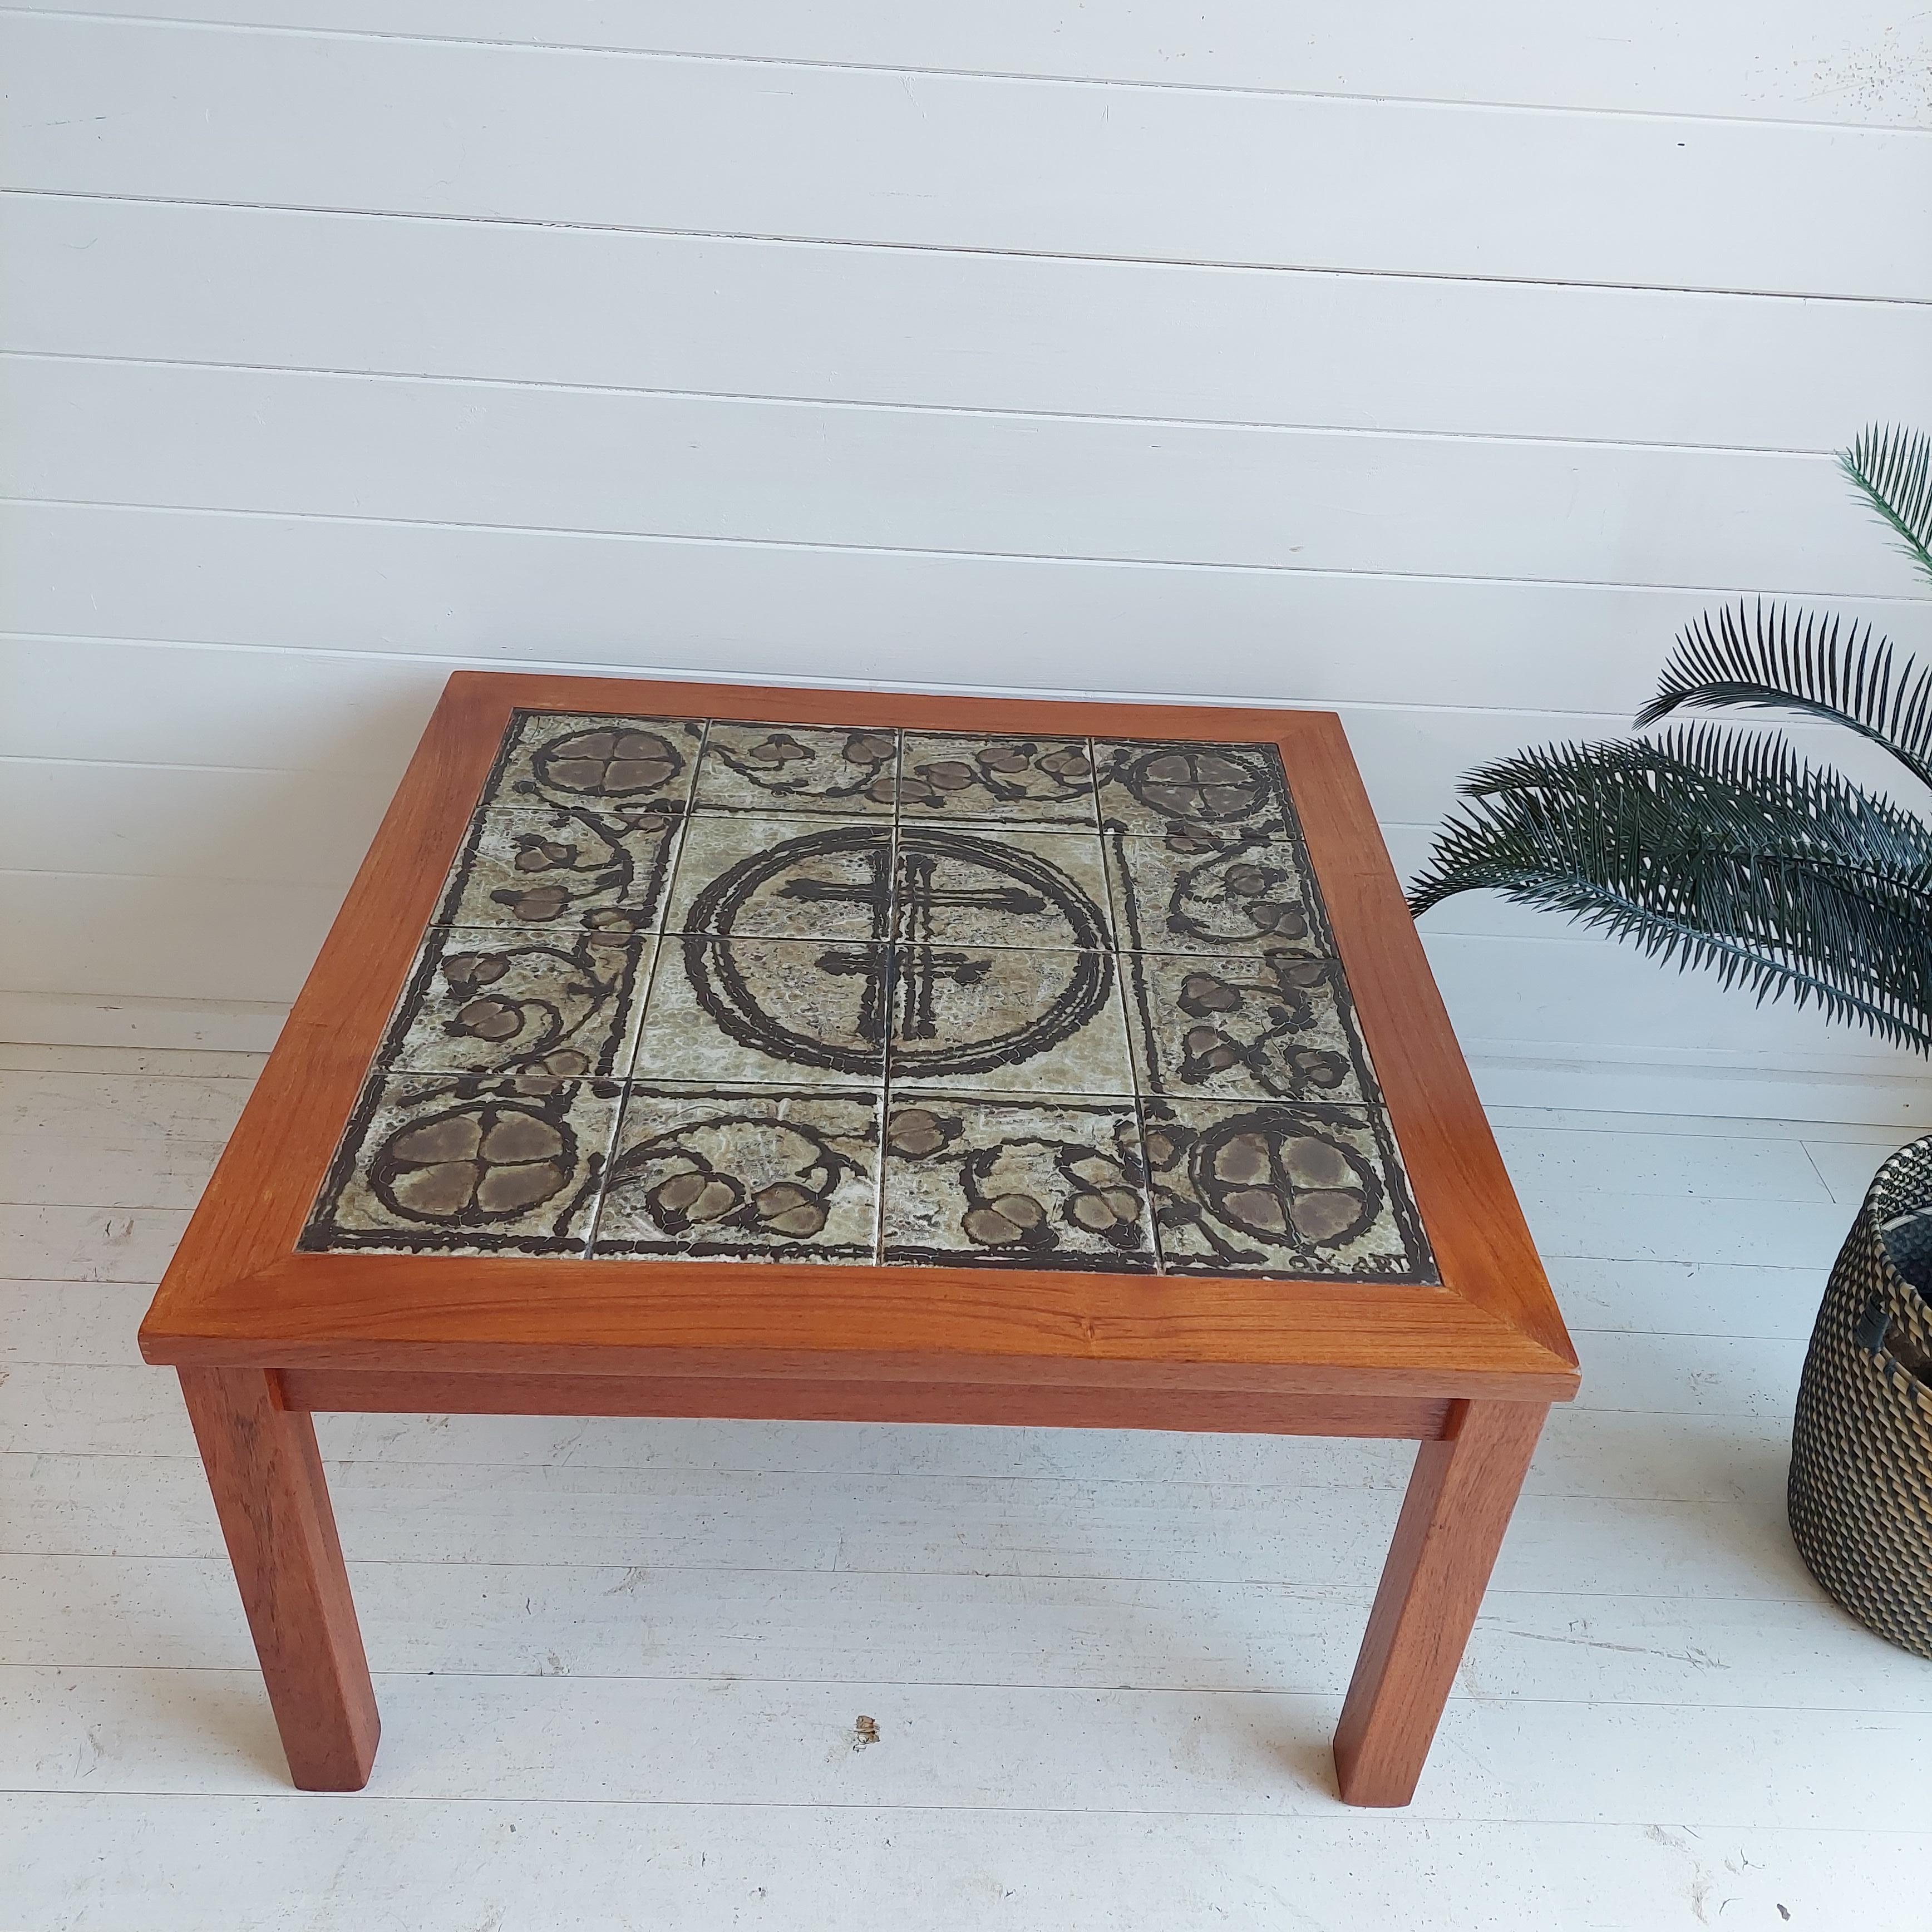 Charmante table basse ou d'appoint en céramique et bois de haute qualité par Ox-art Danemark.

Cette table basse rustique de forme carrée est fabriquée en bois de haute qualité avec une base en aluminium.
Le plateau en céramique est orné d'un